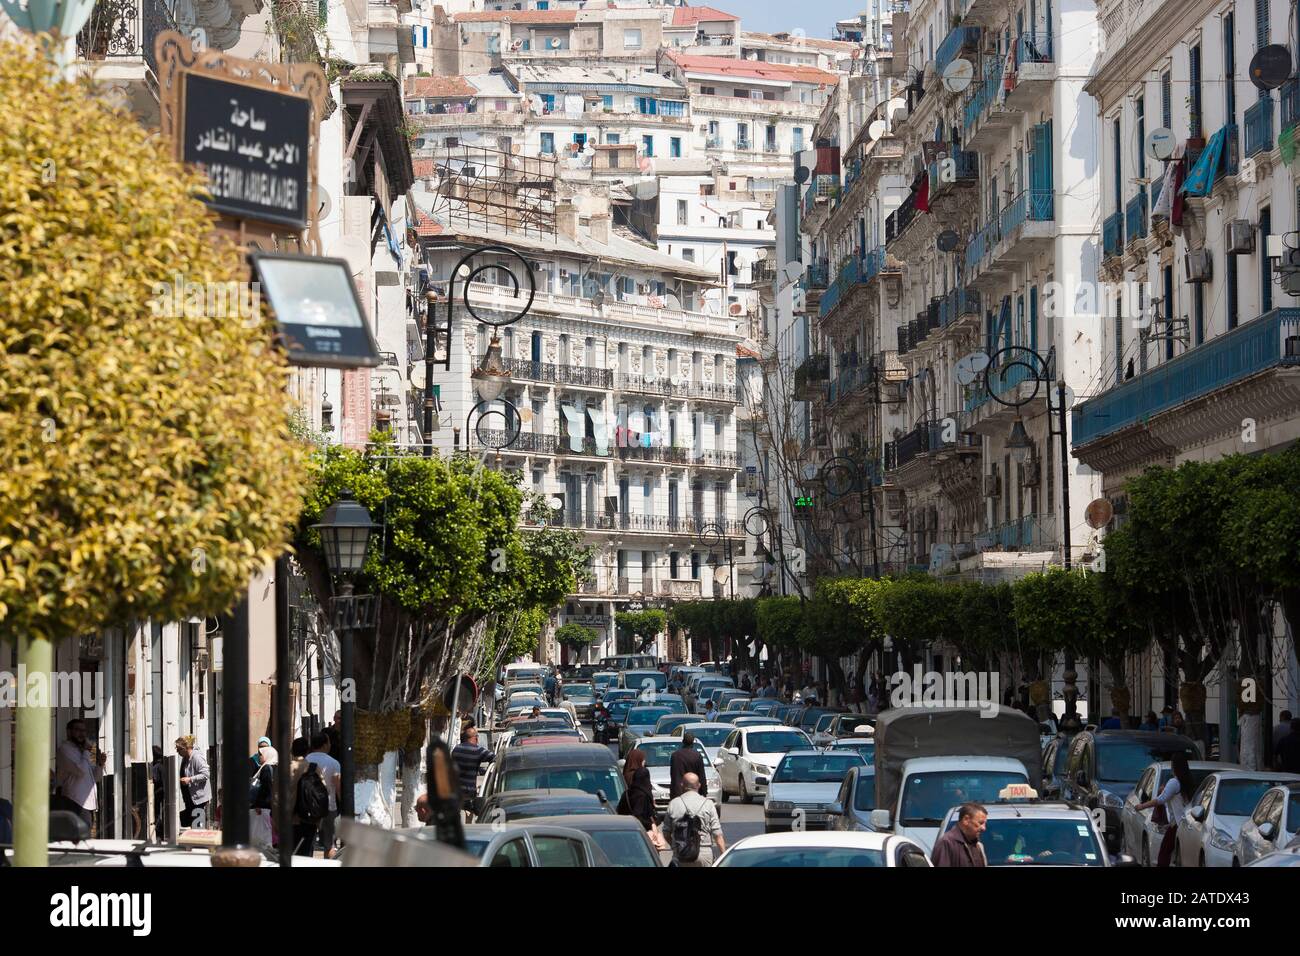 La arquitectura francesa prevalece en toda la ciudad de Argel, prueba de la aventura colonial francesa en Argelia Foto de stock